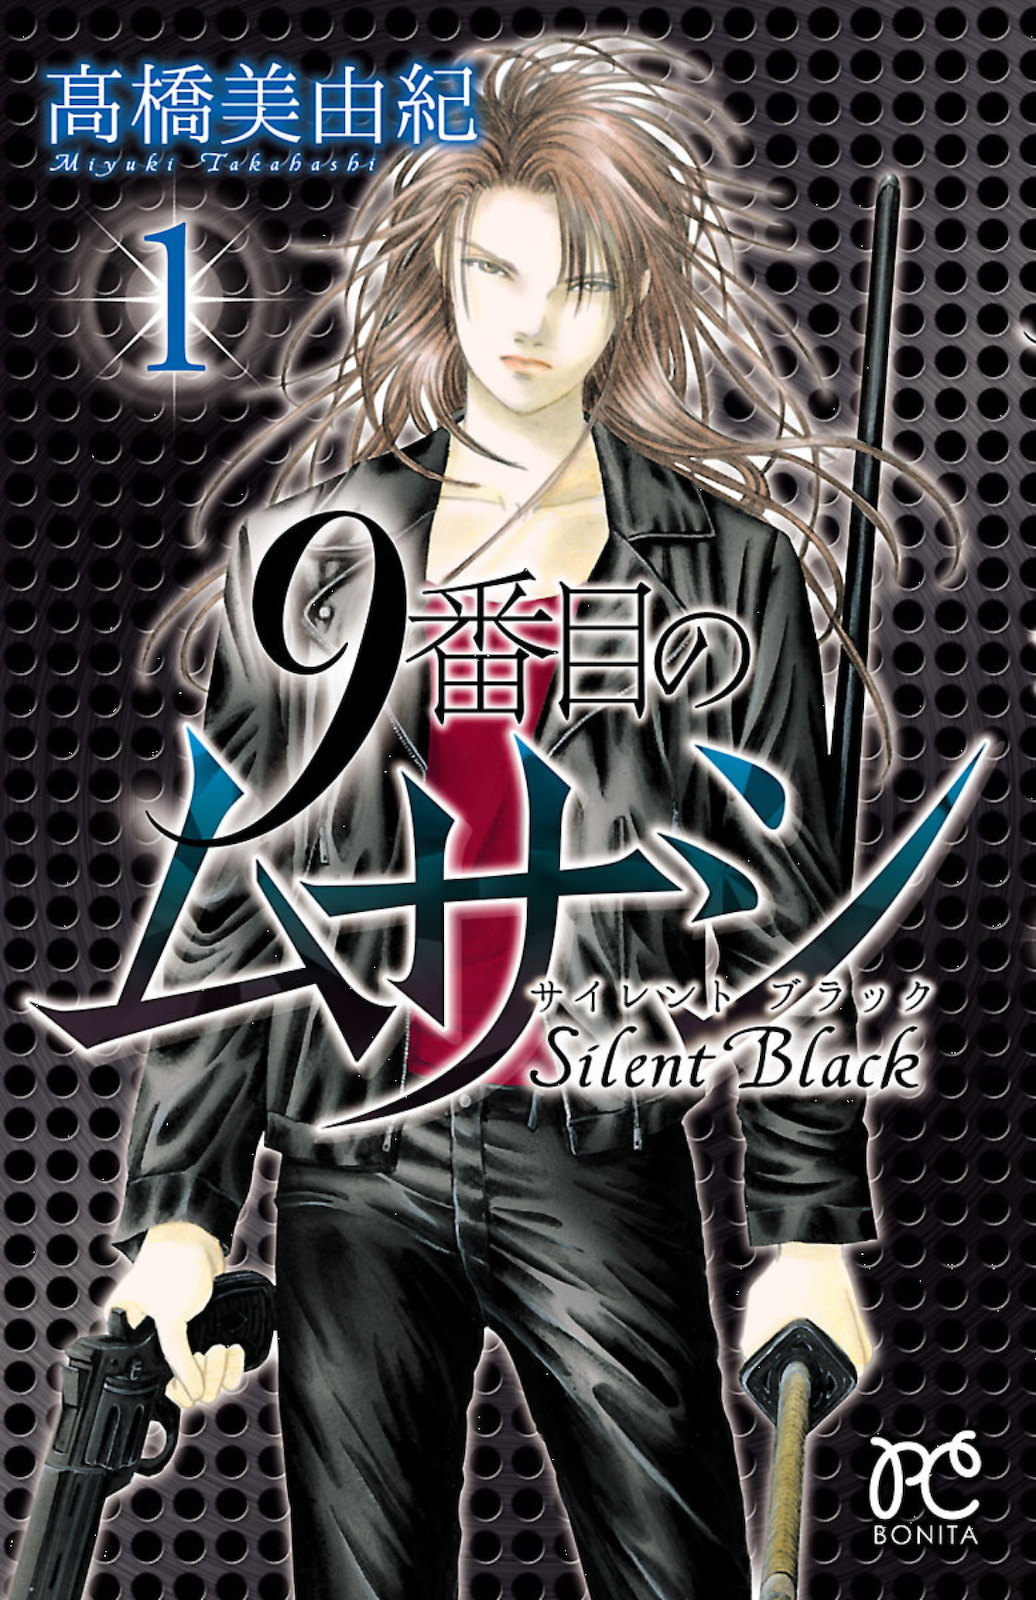 Musashi No.9 - Silent Black